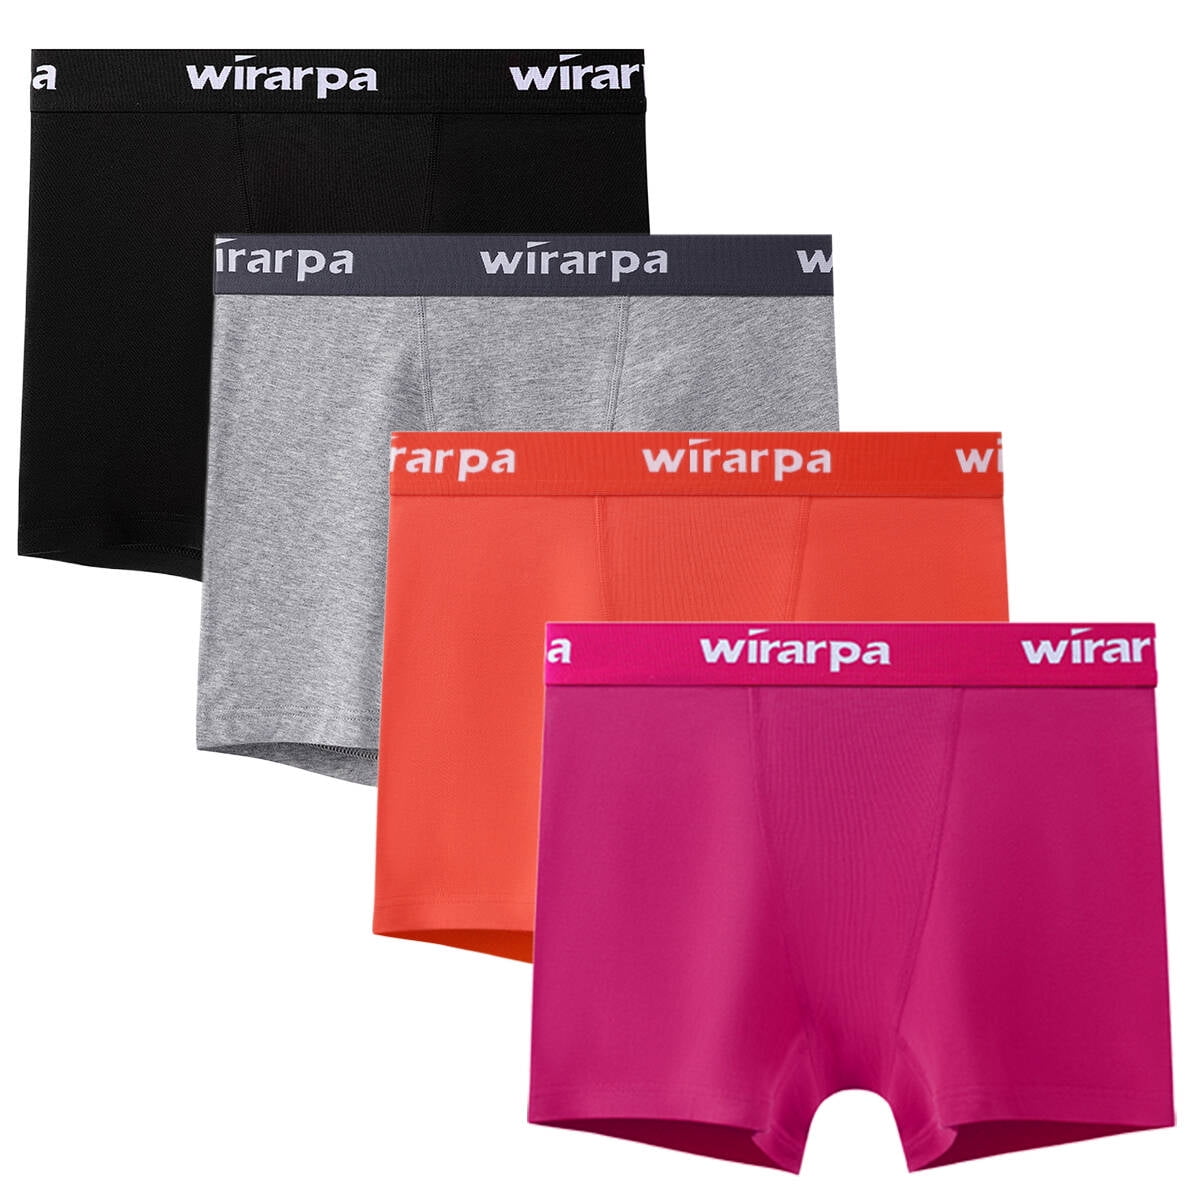 wirarpa Women's Cotton Boy Shorts Underwear Anti Palestine